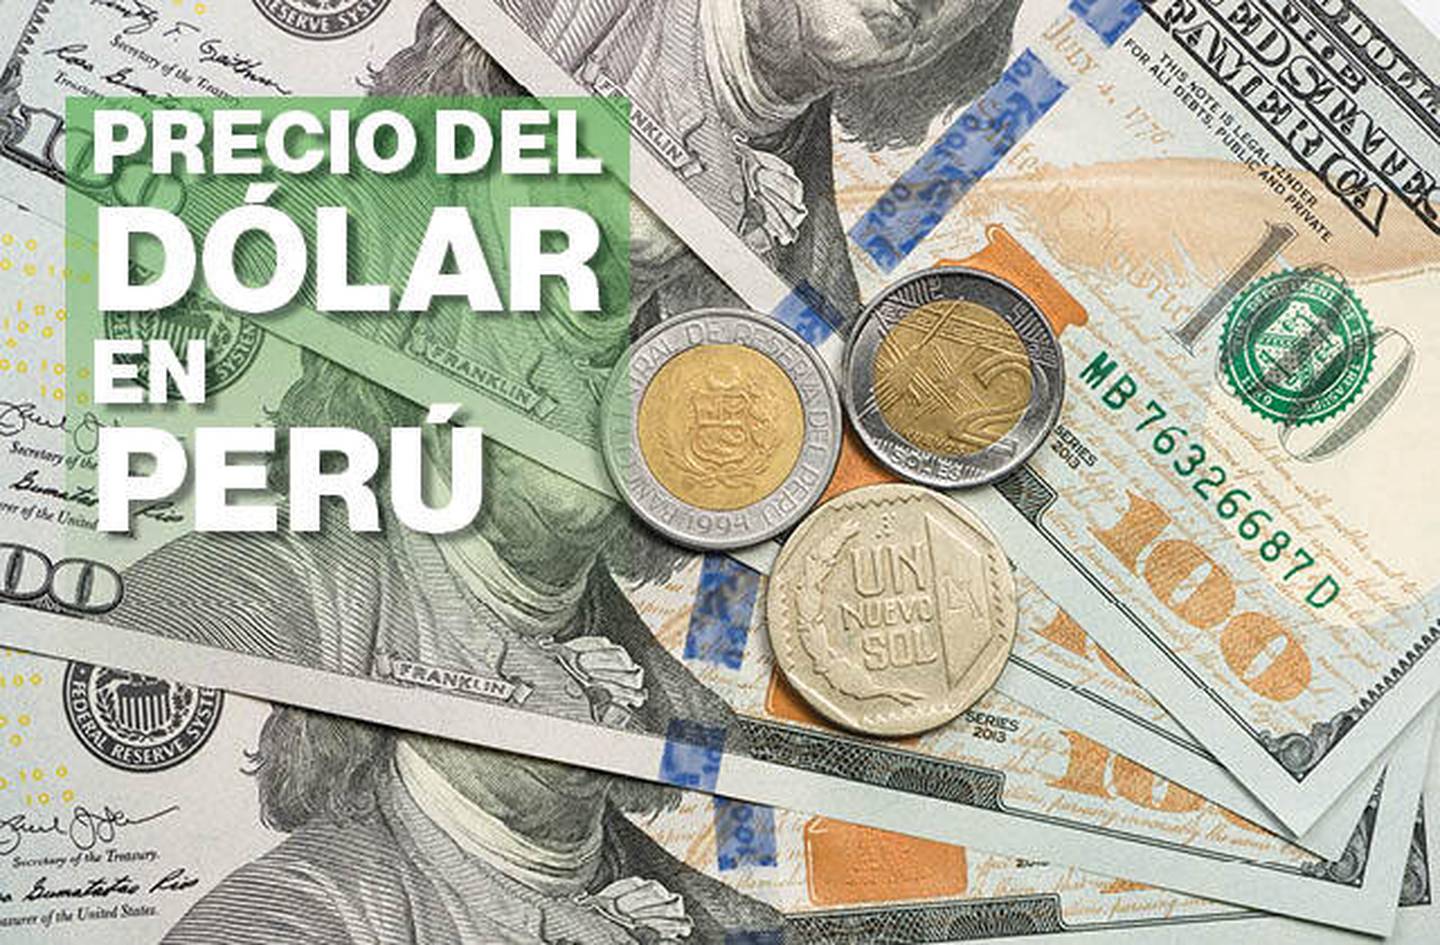 En lo que va del 2022 el dólar en Perú ha caído más de 8%. El sol peruano es la tercera moneda que más se ha apreciado entre las divisas de mercados emergentes y en comparación al dólar de EE.UU.